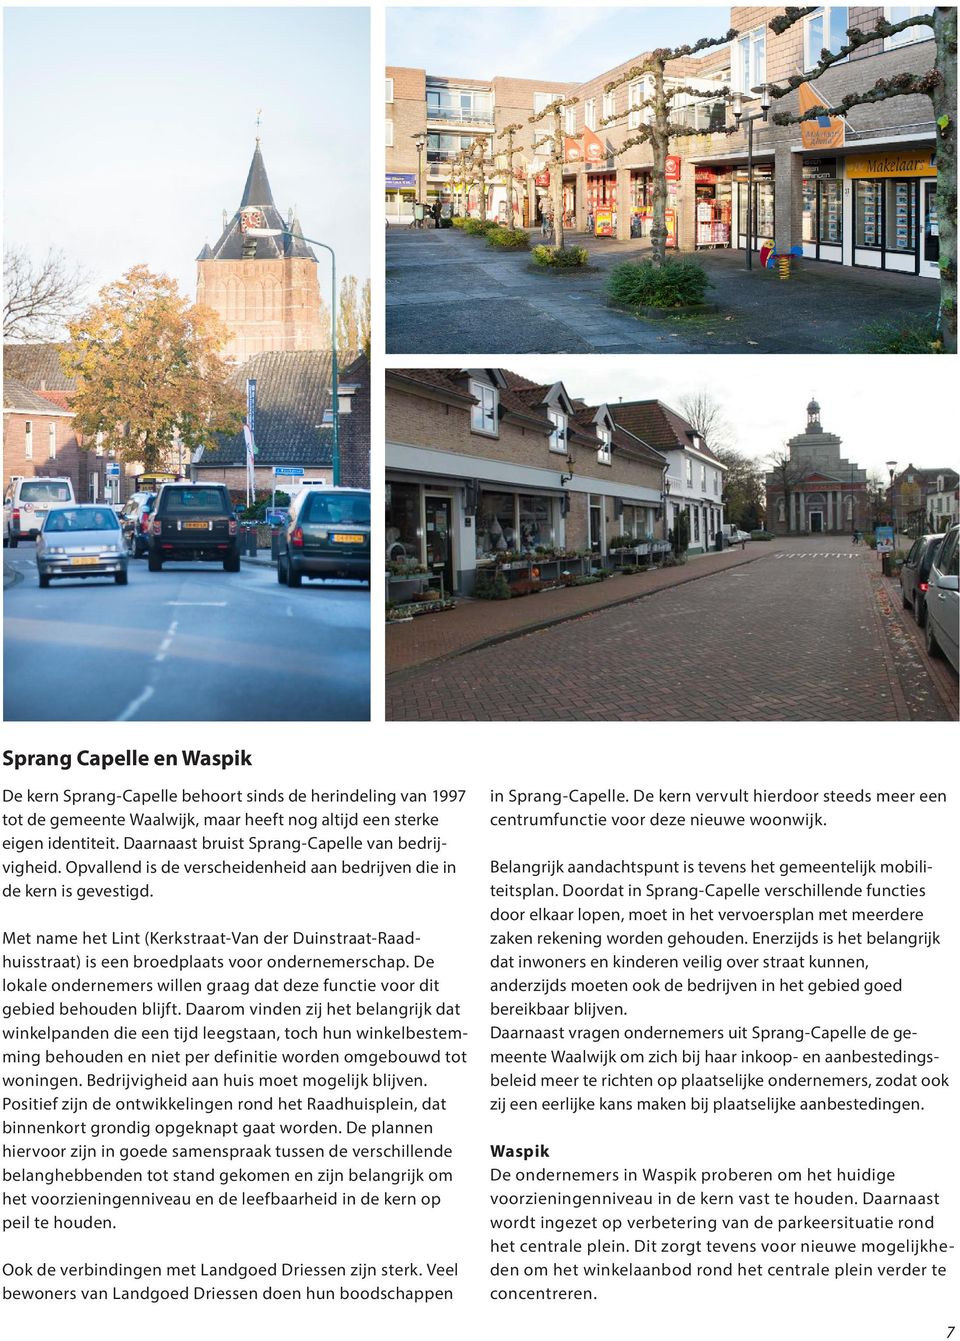 Met name het Lint (Kerkstraat-Van der Duinstraat-Raadhuisstraat) is een broedplaats voor ondernemerschap. De lokale ondernemers willen graag dat deze functie voor dit gebied behouden blijft.